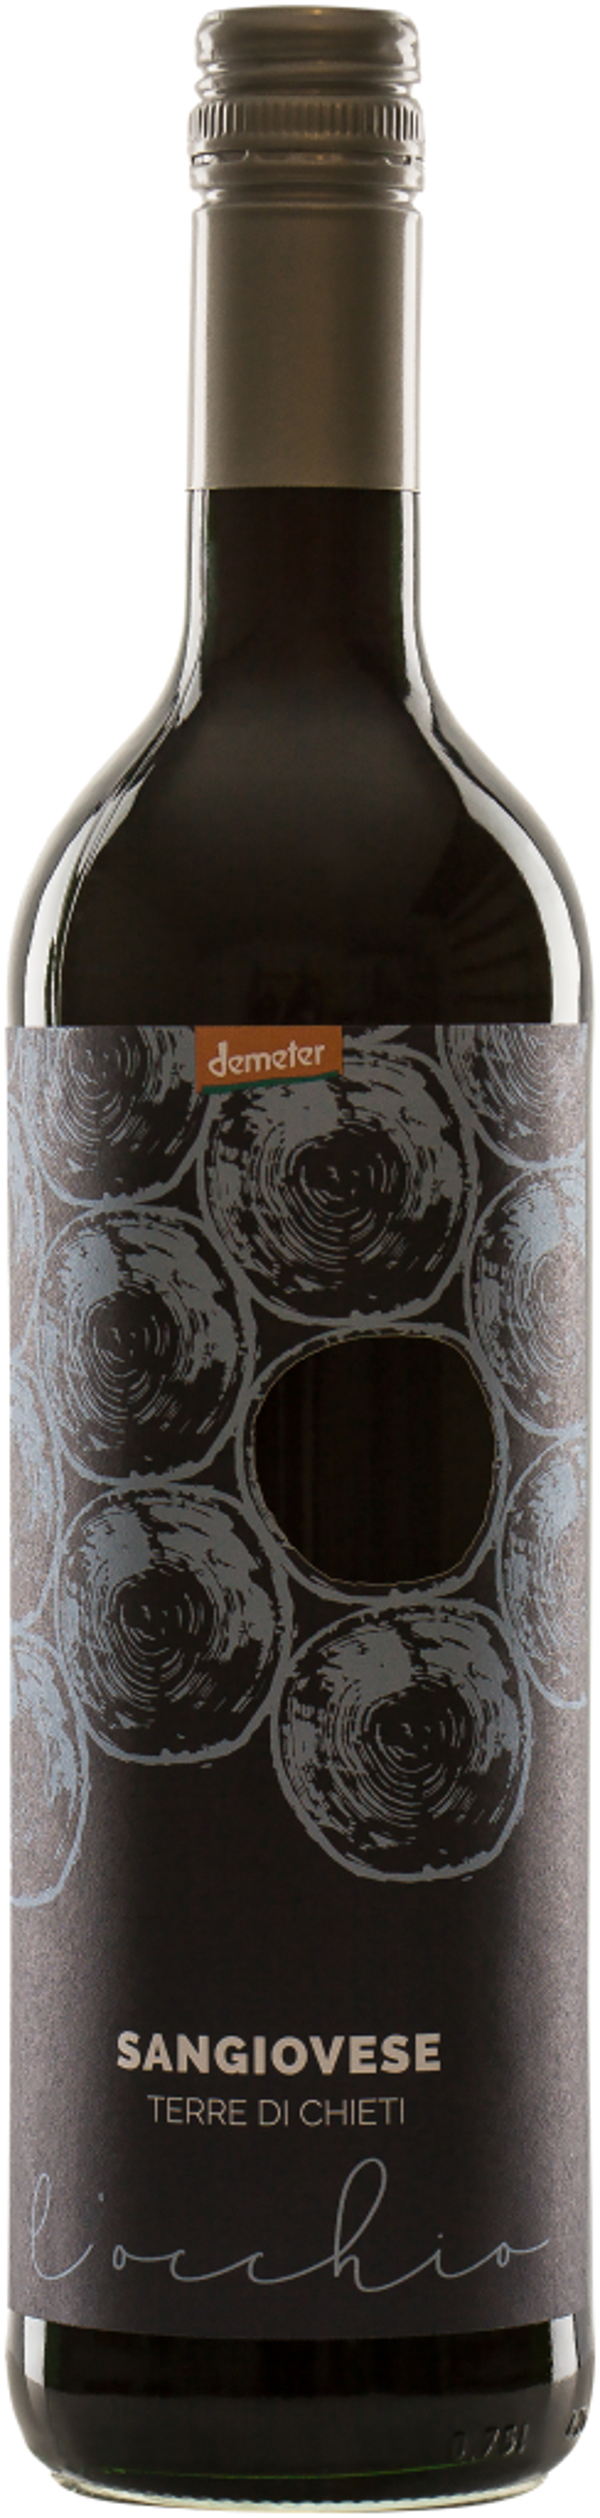 Produktfoto zu VPE Wein Sangiovese IGT 2012 Demeter 6x0,75 l Zellertaler Keller